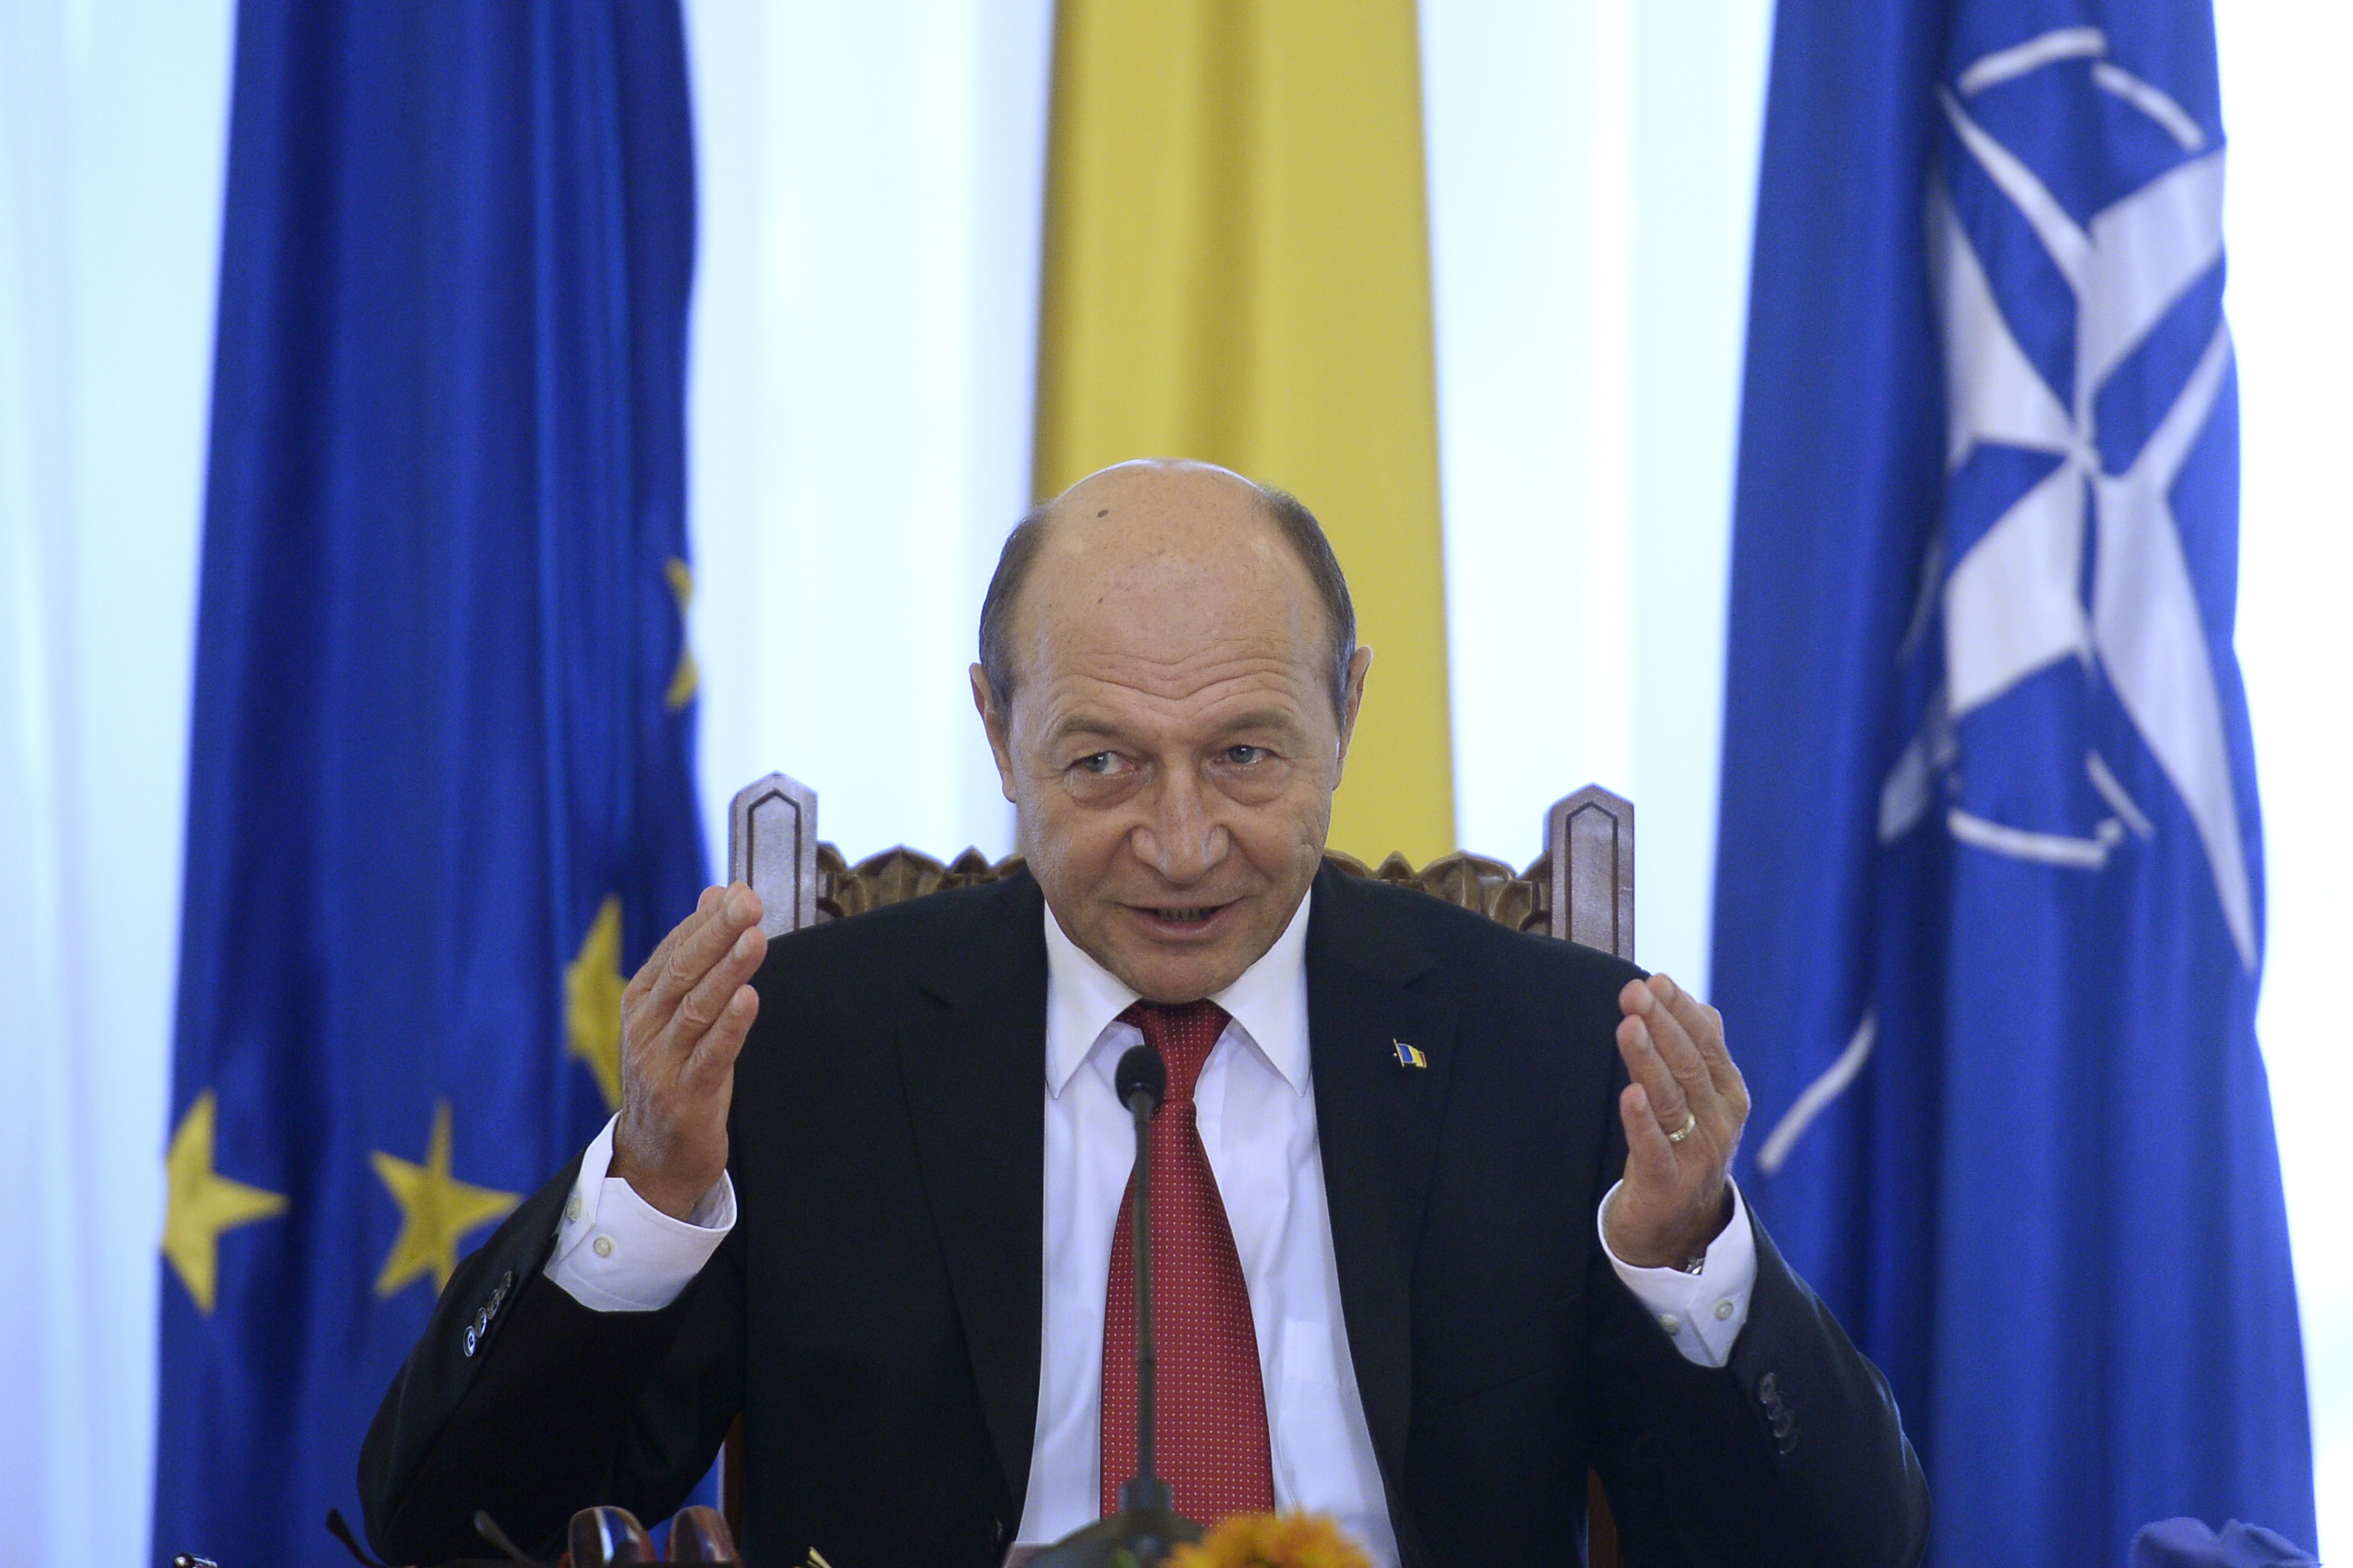 Băsescu: Cer demisia sau demiterea imediată a şefului Jandarmeriei